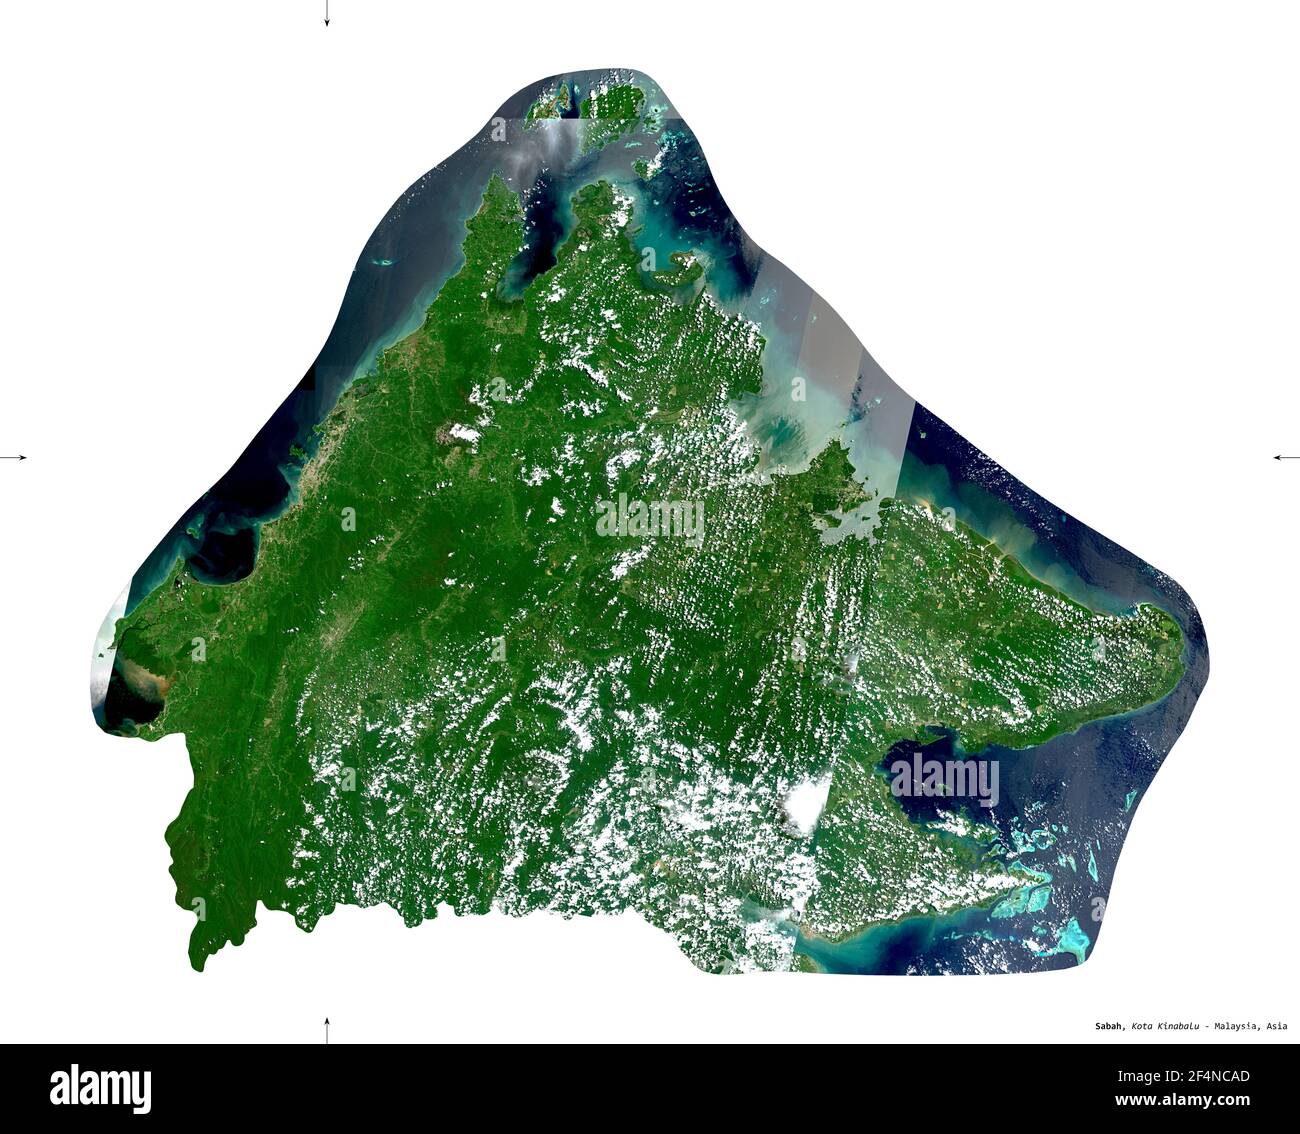 Sabah, État de Malaisie. Imagerie satellite Sentinel-2. Forme isolée sur solide blanc. Description, emplacement de la capitale. Contient Coperni modifié Banque D'Images